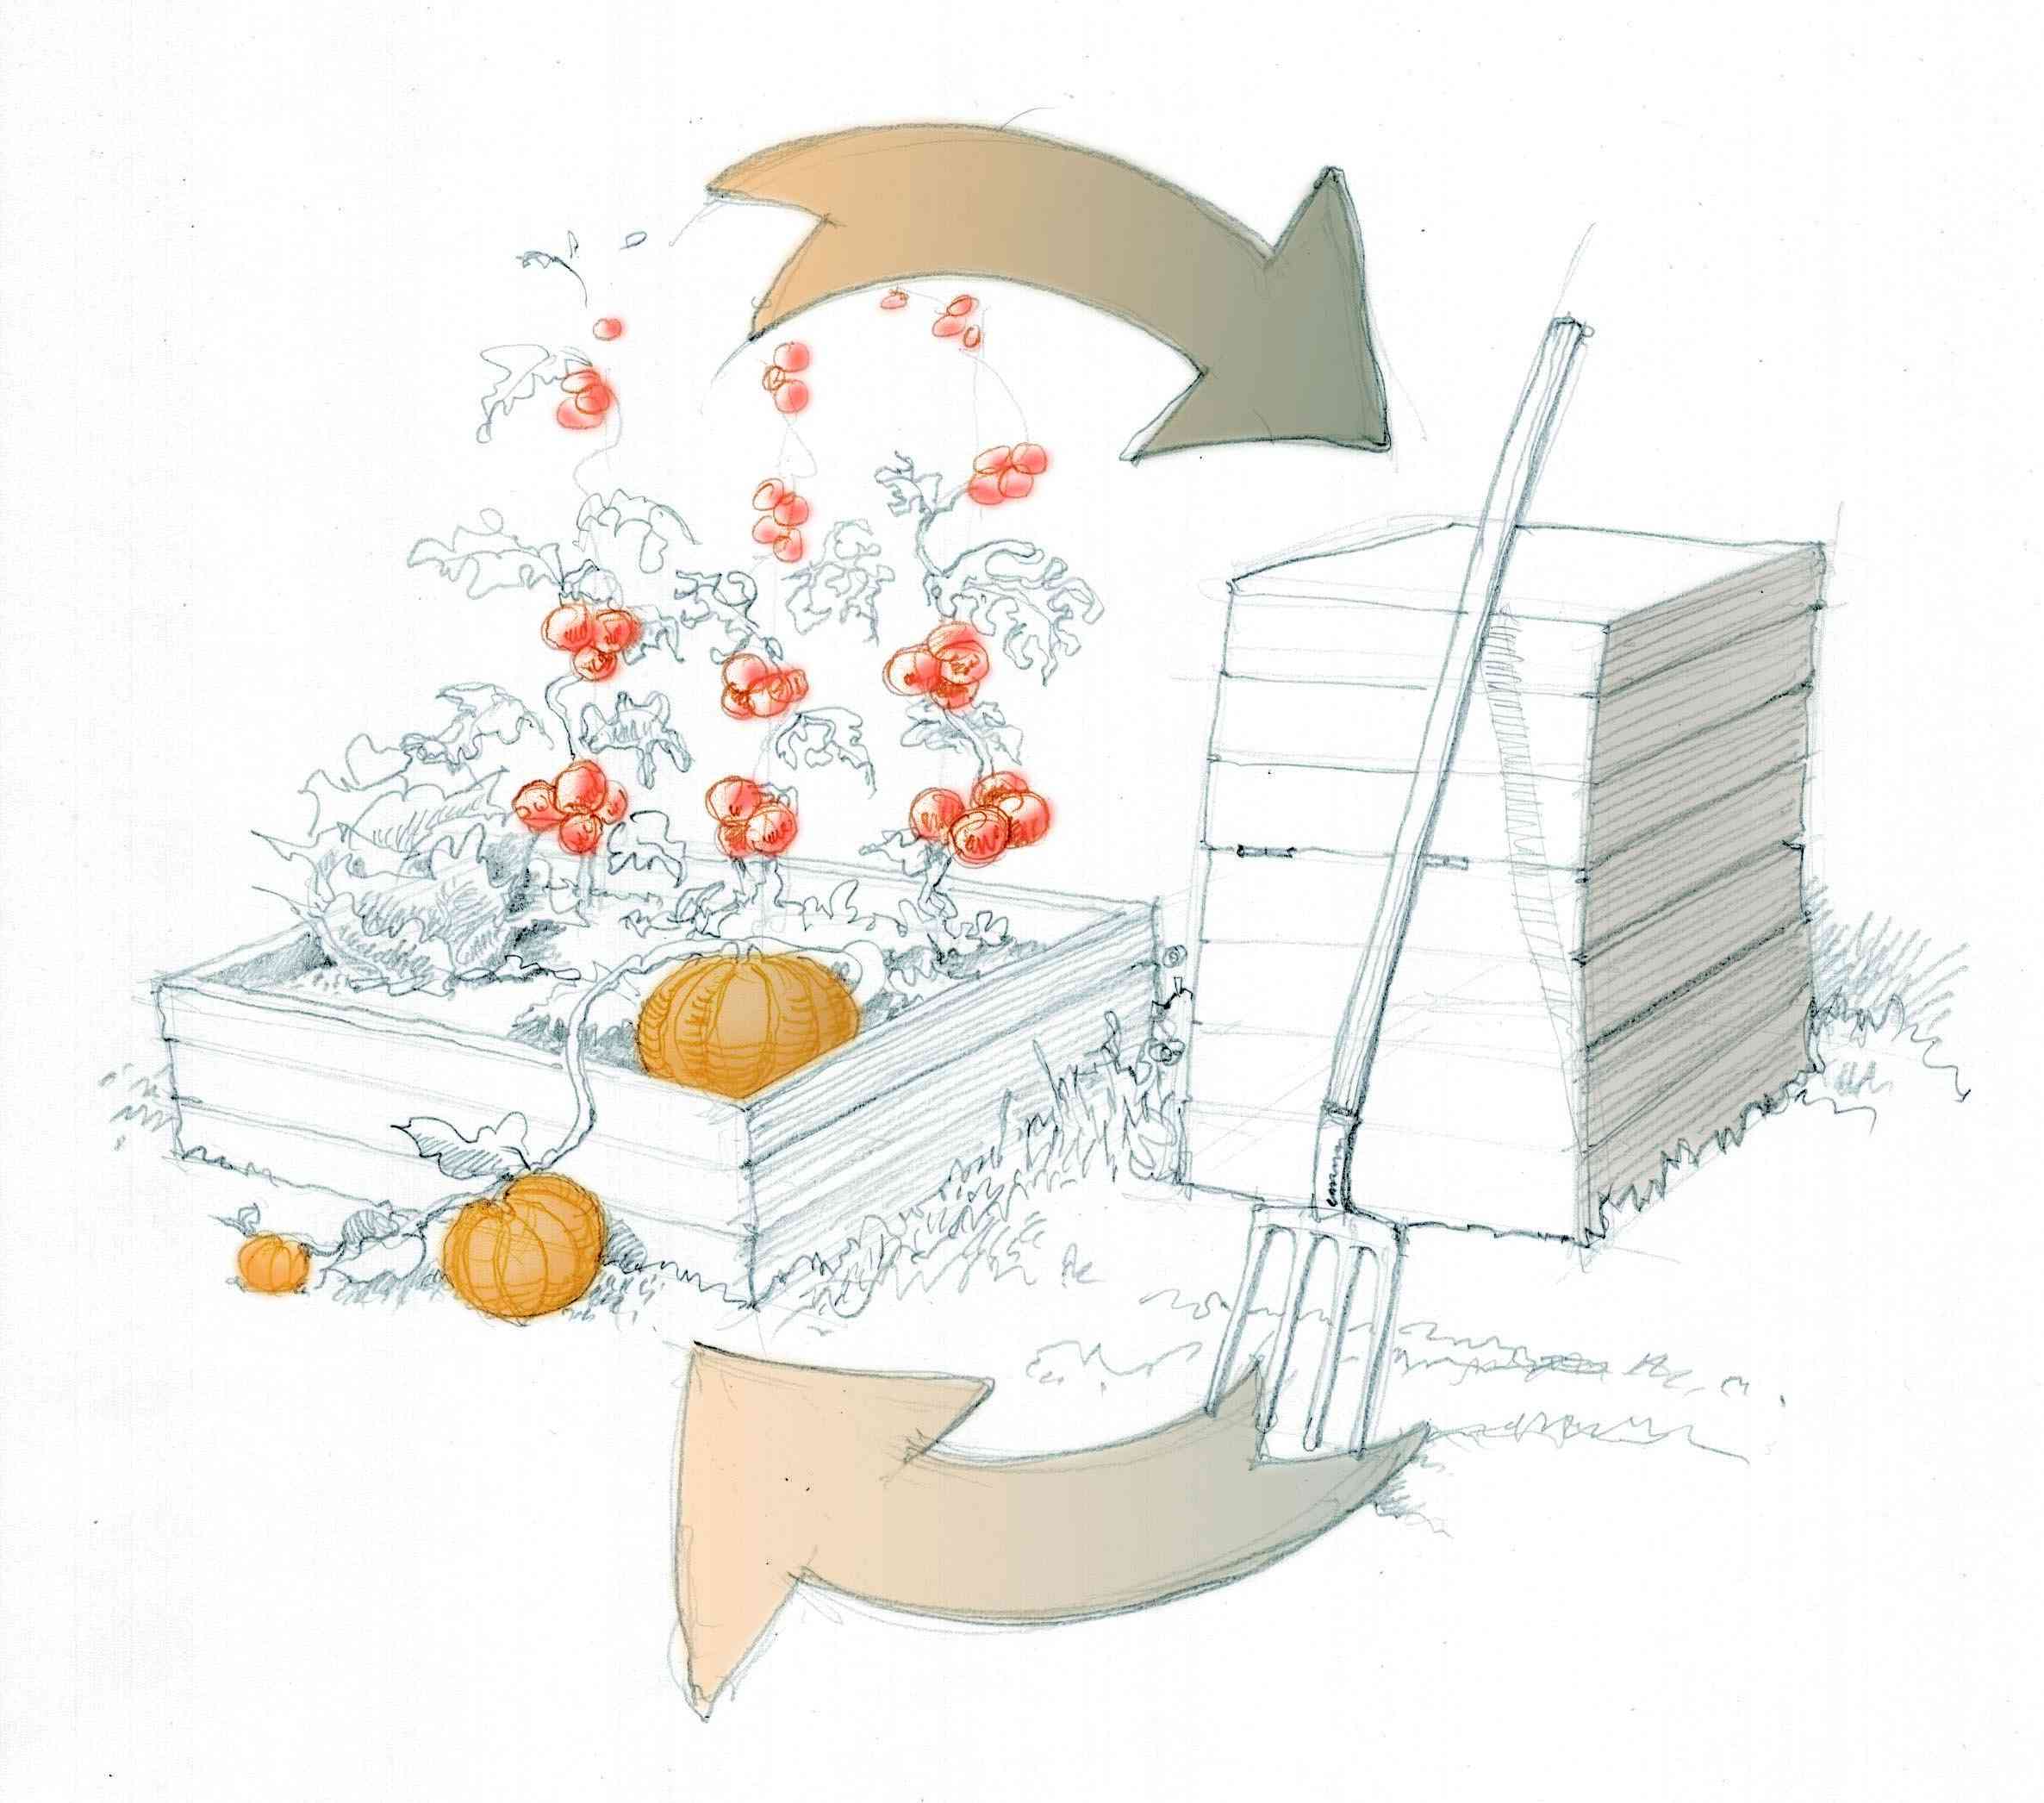 dessin d'un composteur placé à côté d'une zone de culture avec tomates et courges. deux flèches illustrent l'intérêt de cet emplacement relatif.